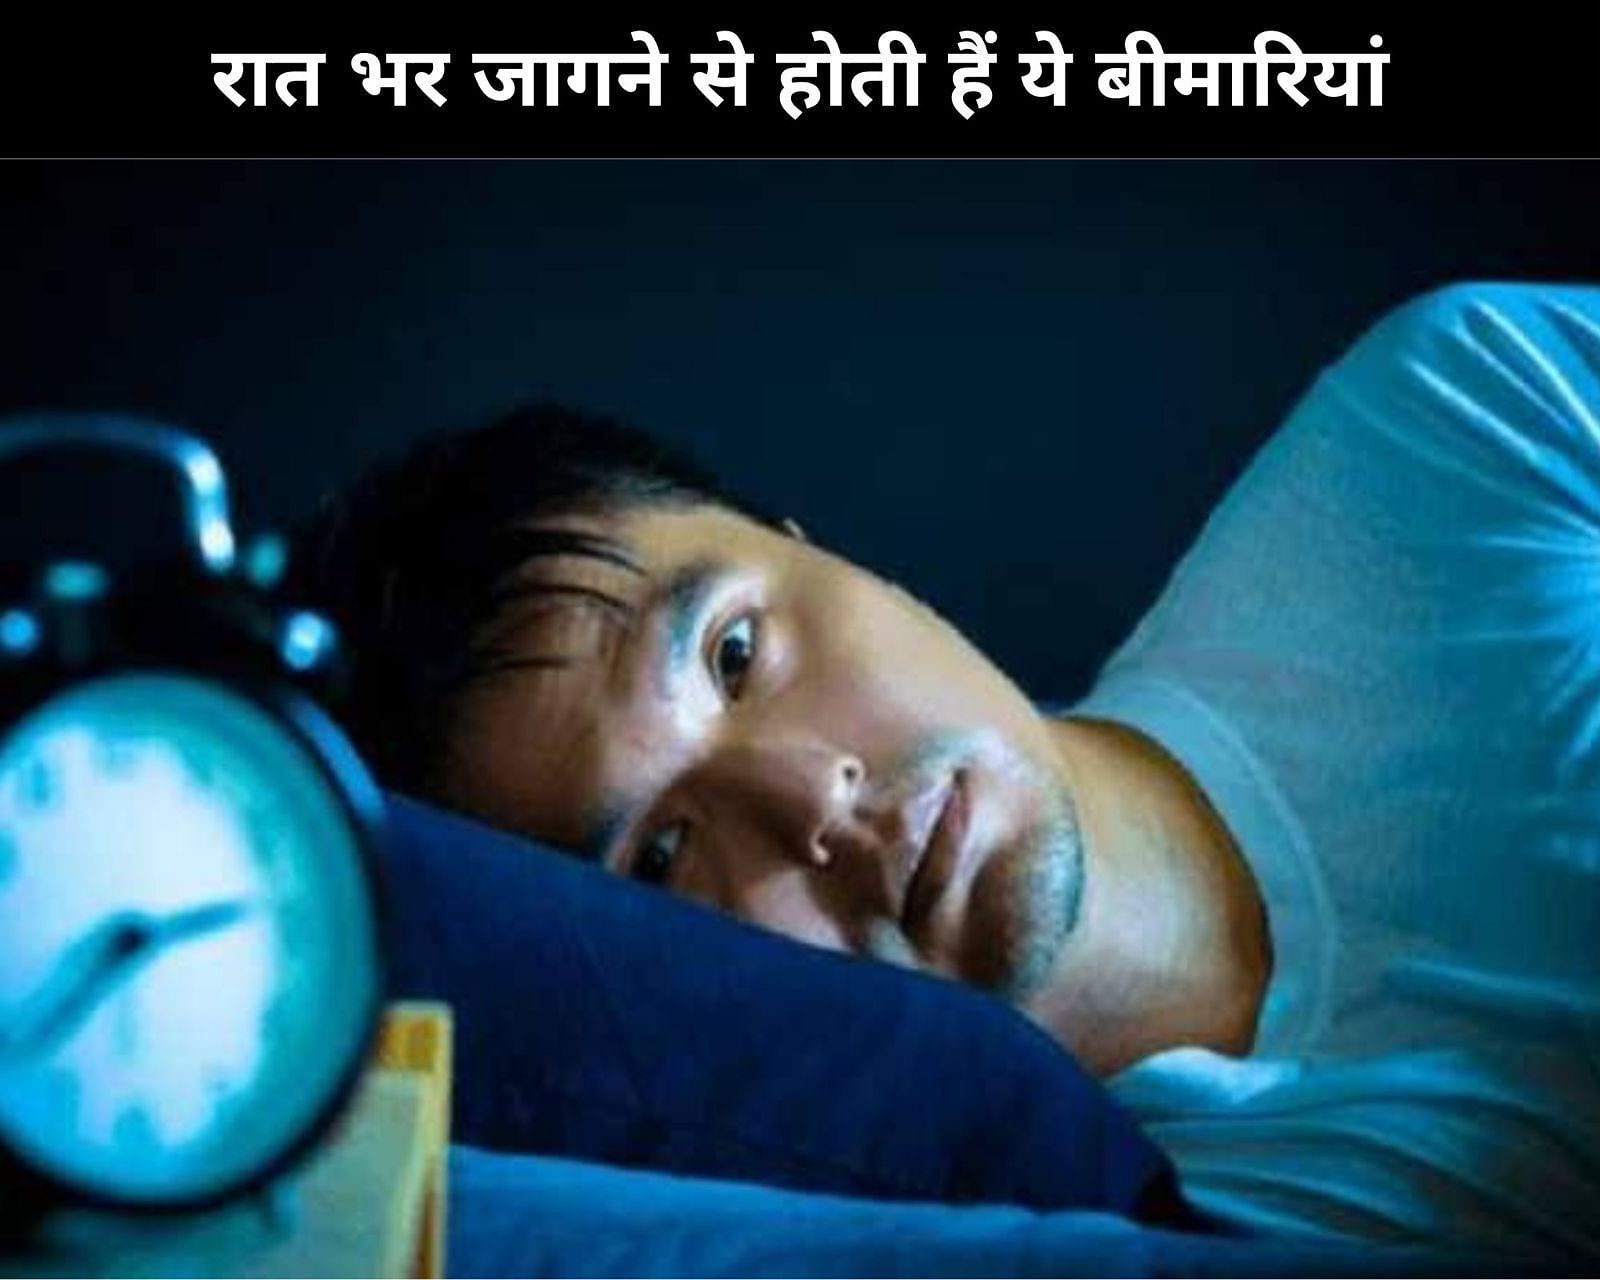  (sportskeeda Hindi) रात भर जागने से होती हैं ये बीमारियां